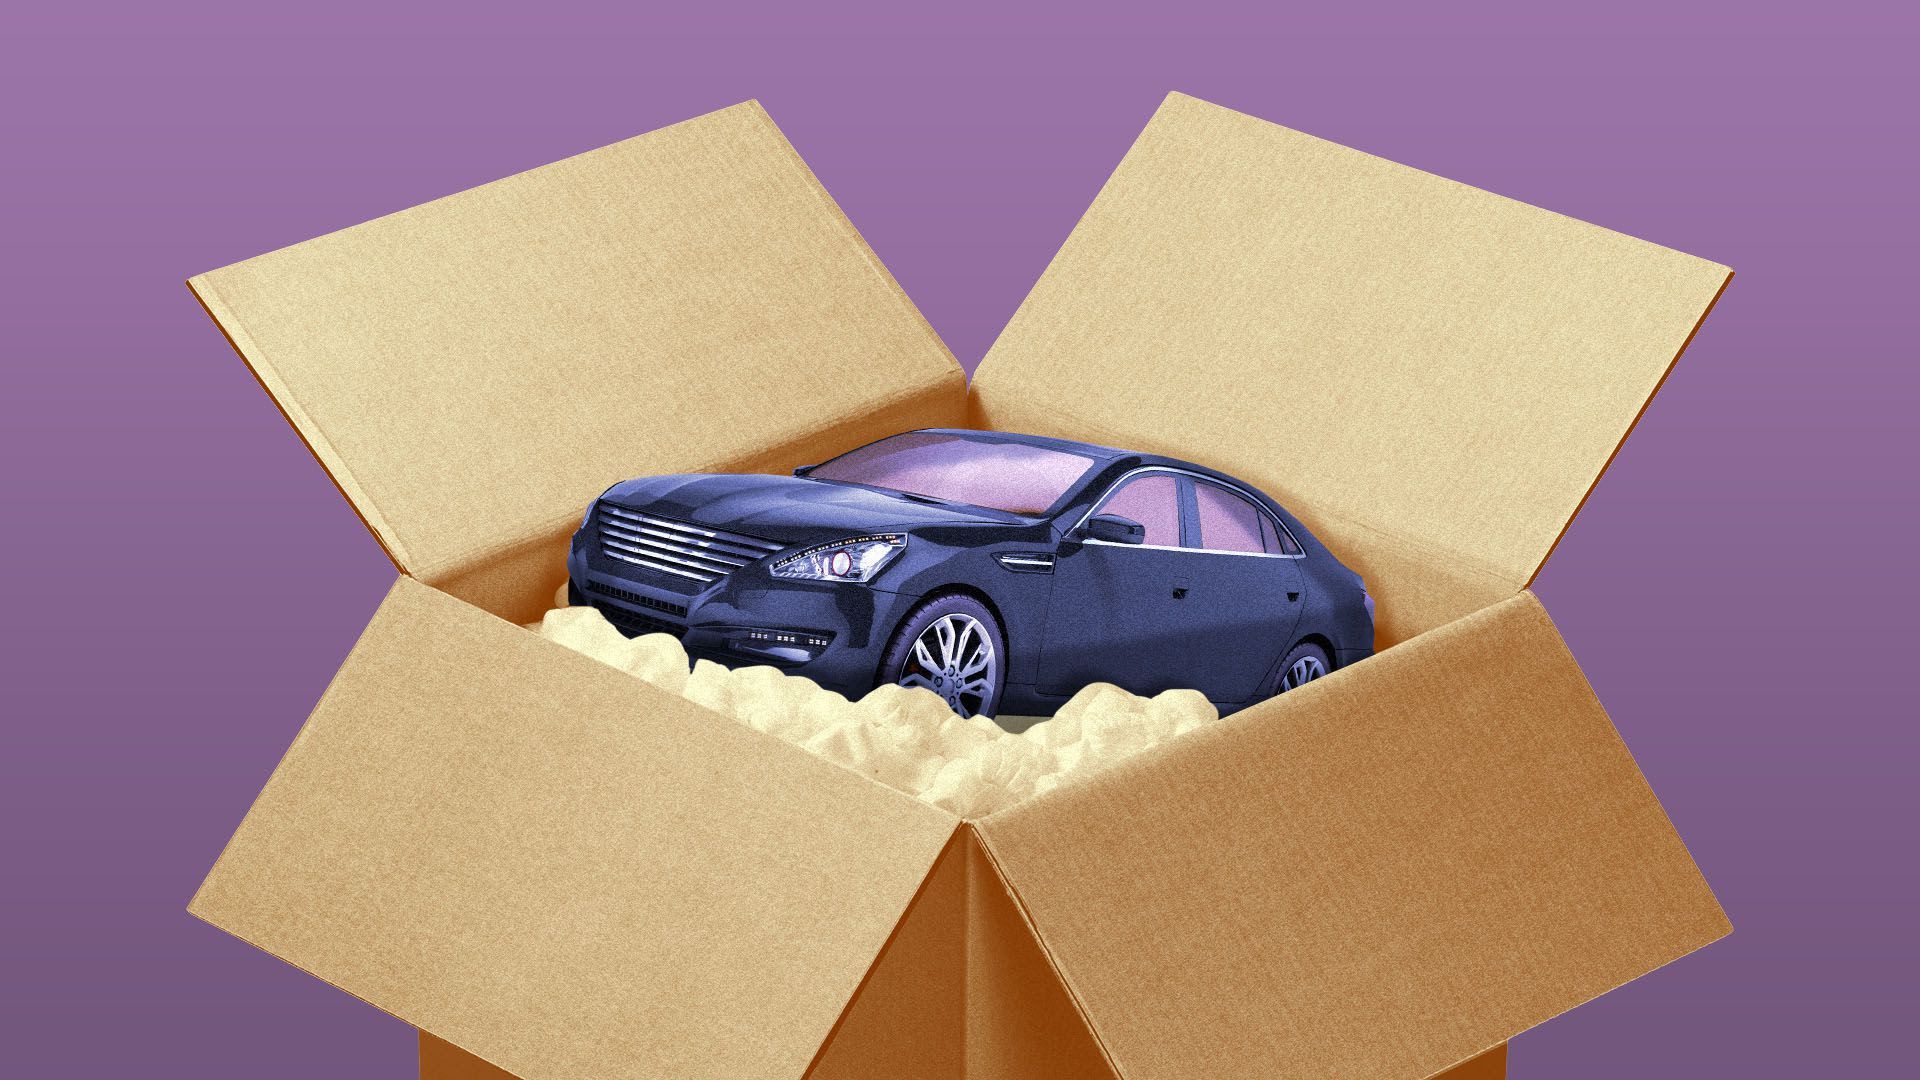 A car in a box.